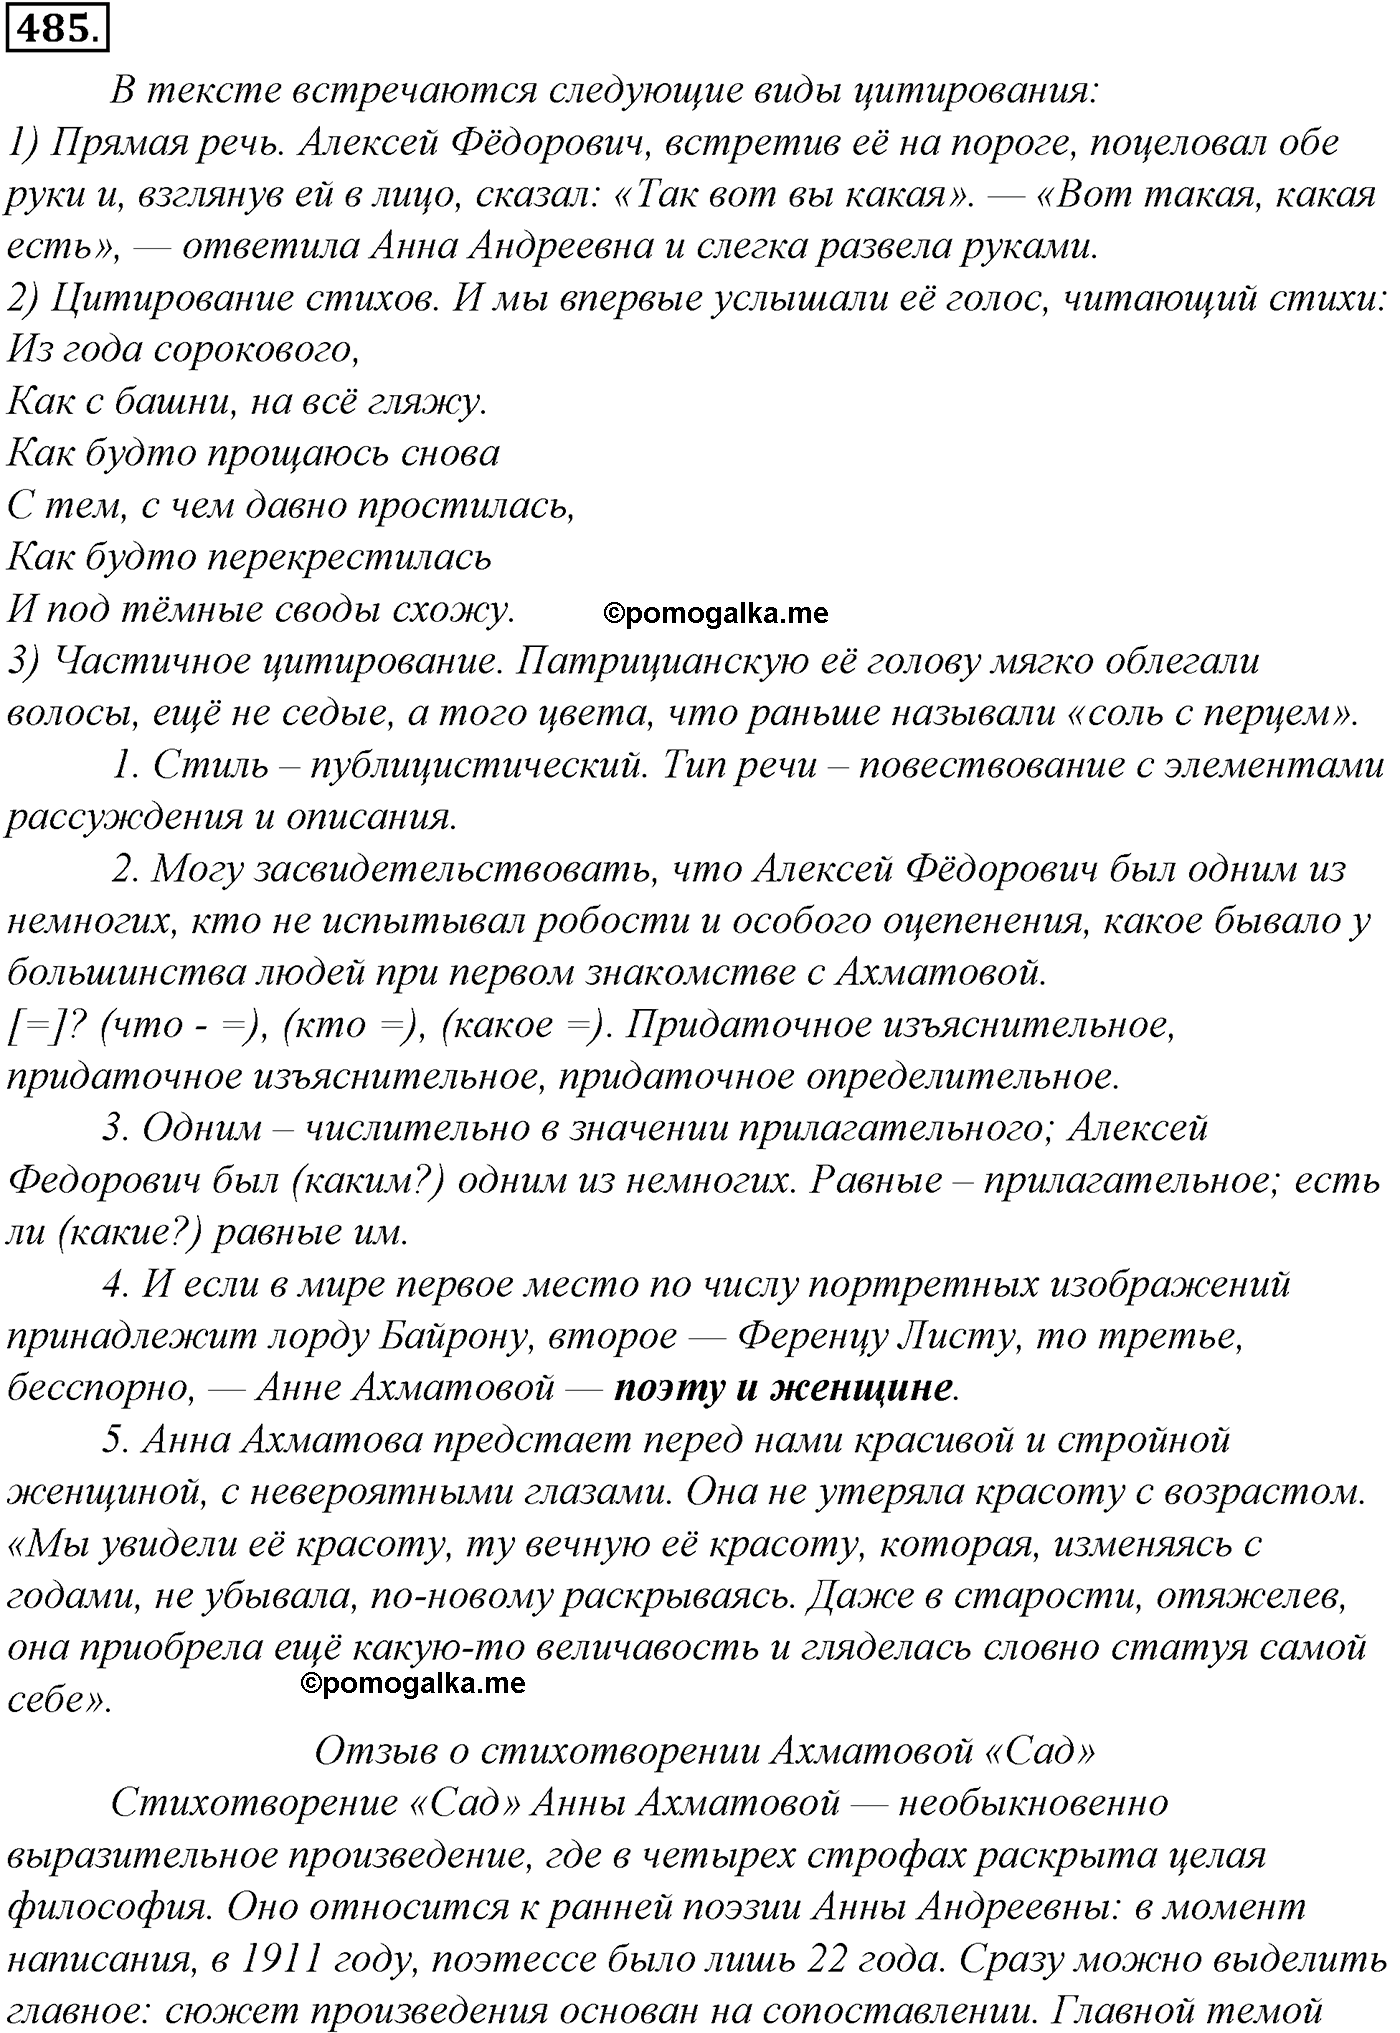 упражнение №485 русский язык 10-11 класс Гольцова